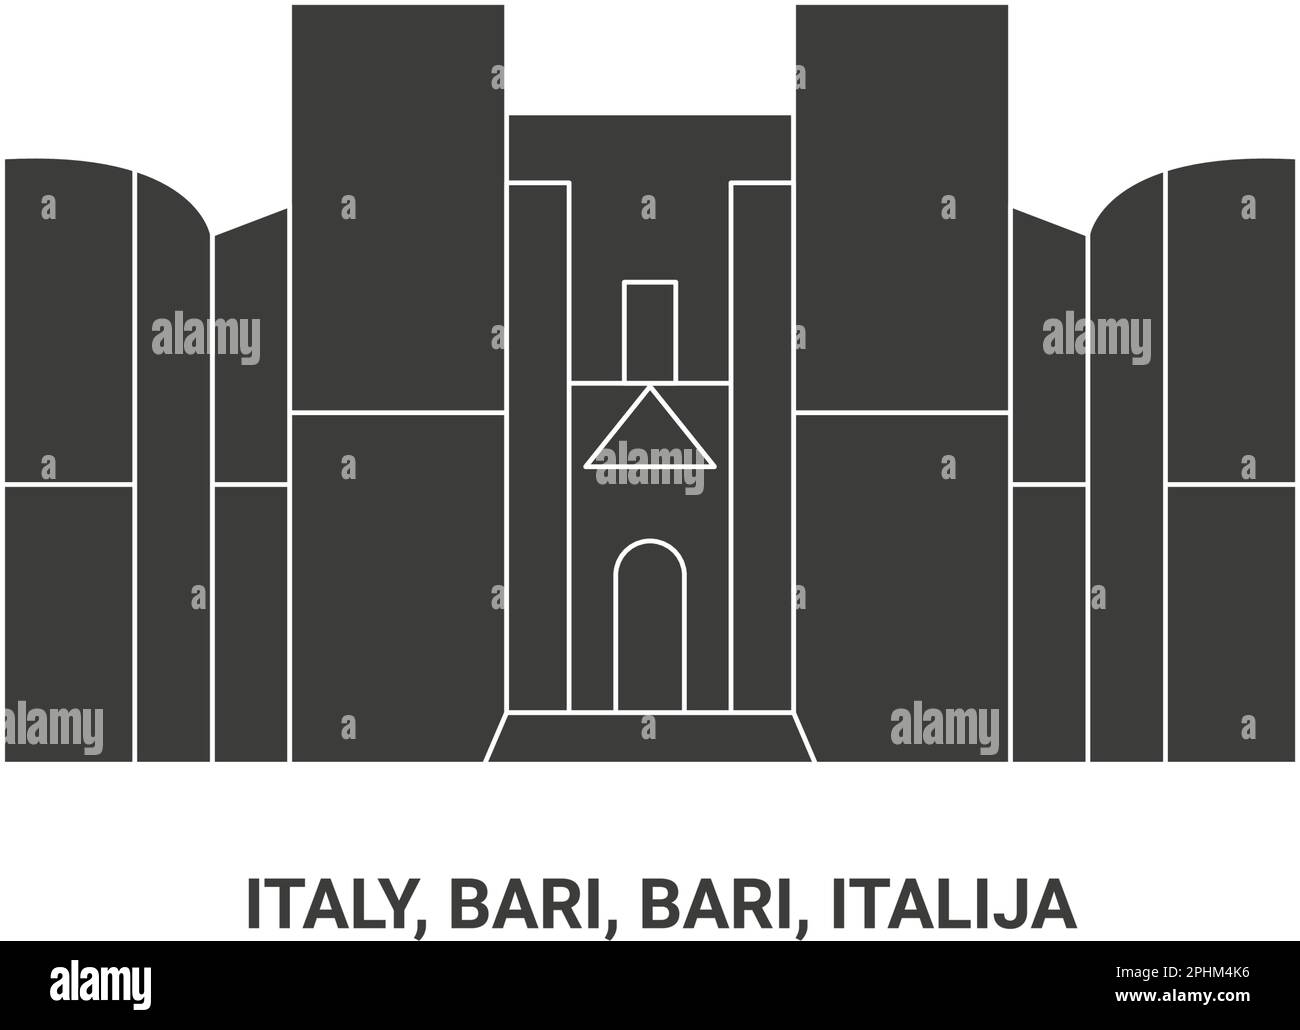 Italy, Bari, Bari, Italija, travel landmark vector illustration Stock Vector